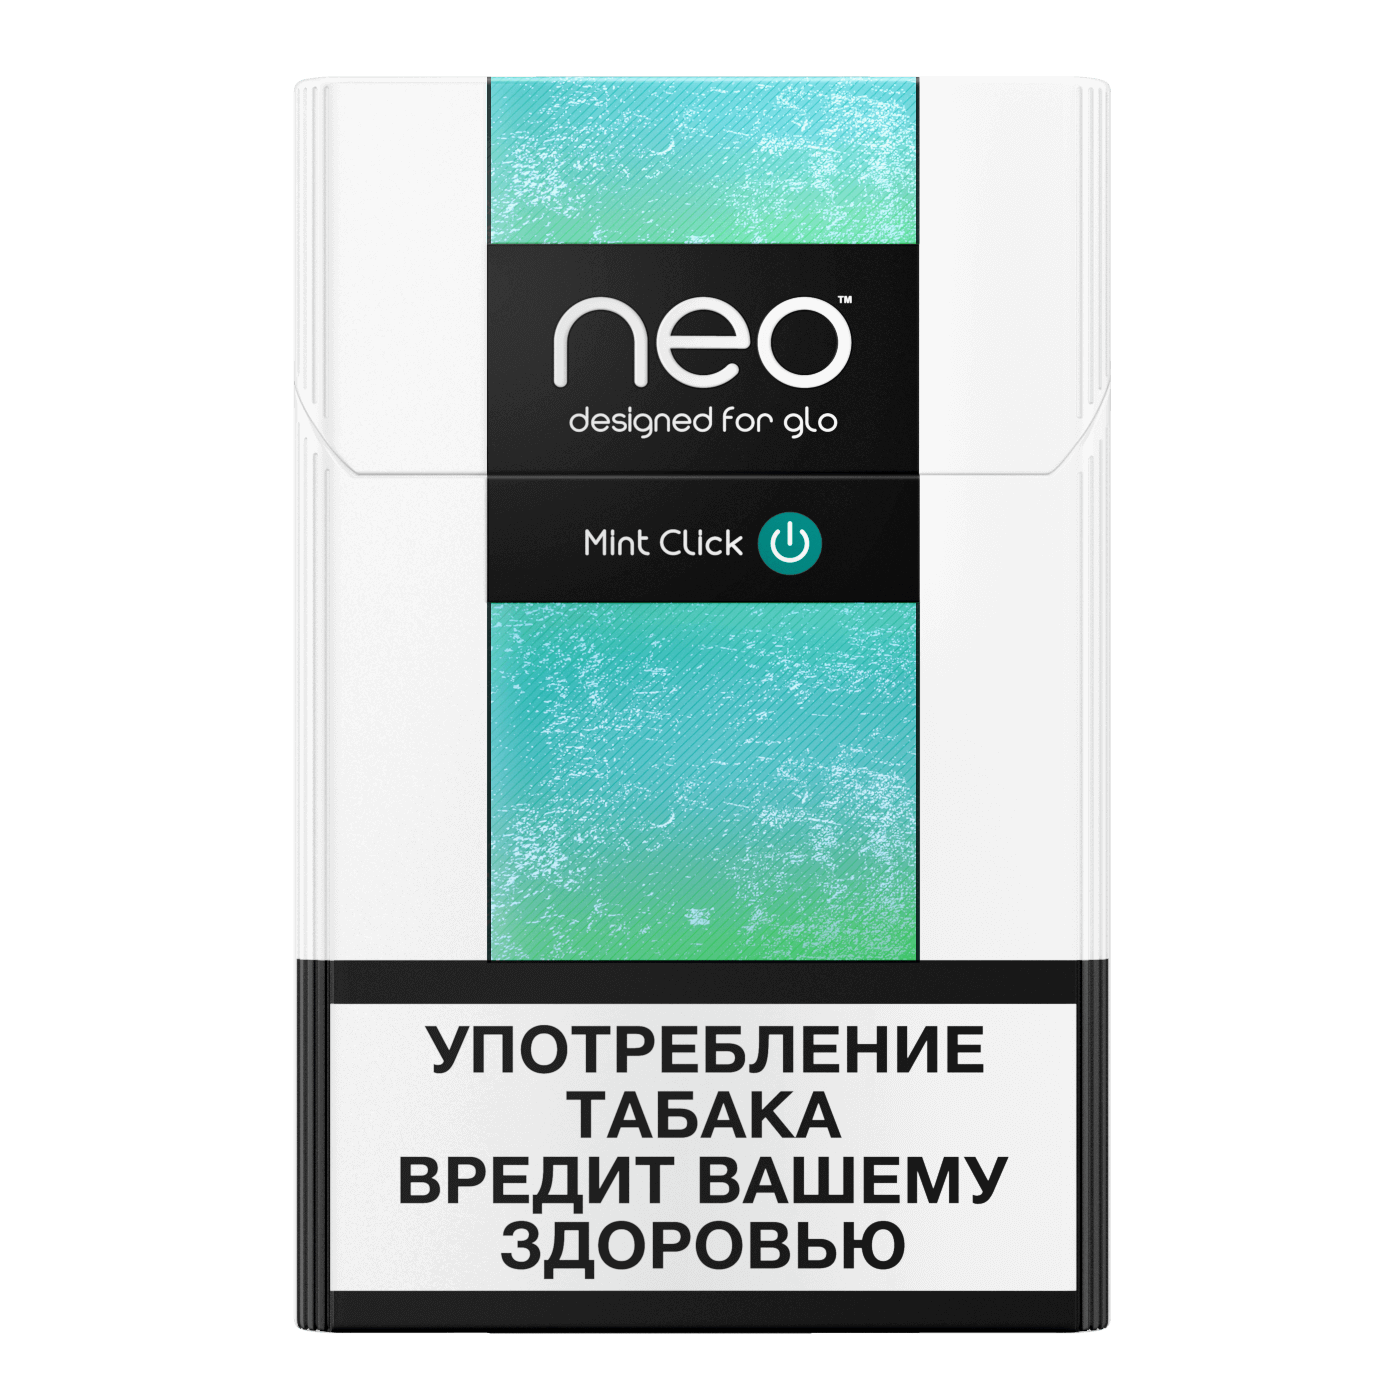 Самые стики для гло. Neo стики для Glo. Сигареты Neo для Glo. Сигареты Neo для Glo вкусы. Вкусы стиков Glo Neo Nano.